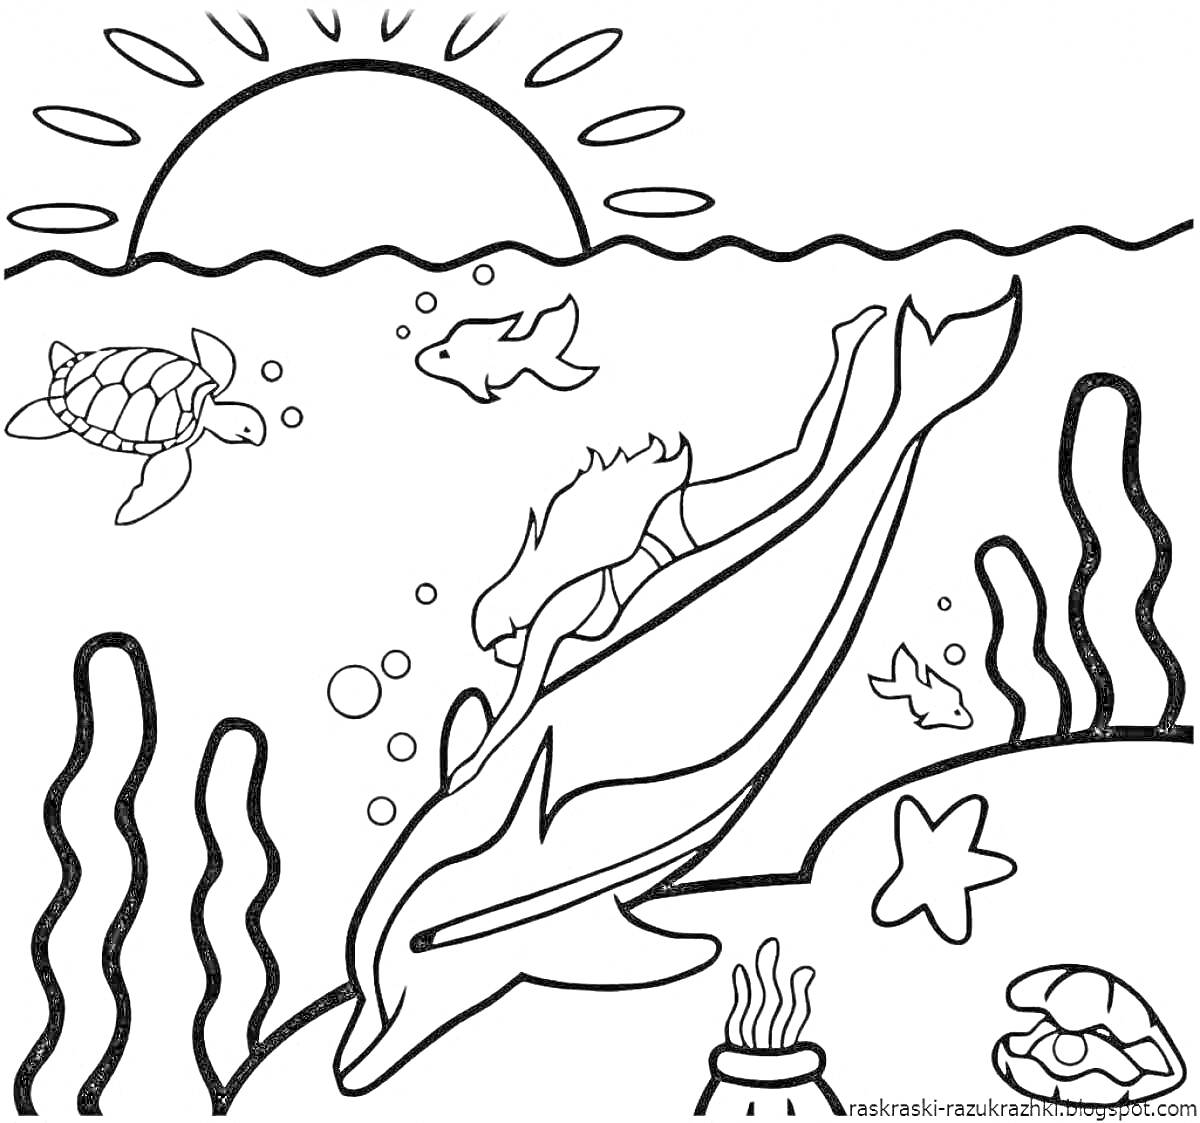 На раскраске изображено: Подводный мир, Дельфин, Черепаха, Водоросли, Море, Солнце, Морская звезда, Океан, Рыба, Животное